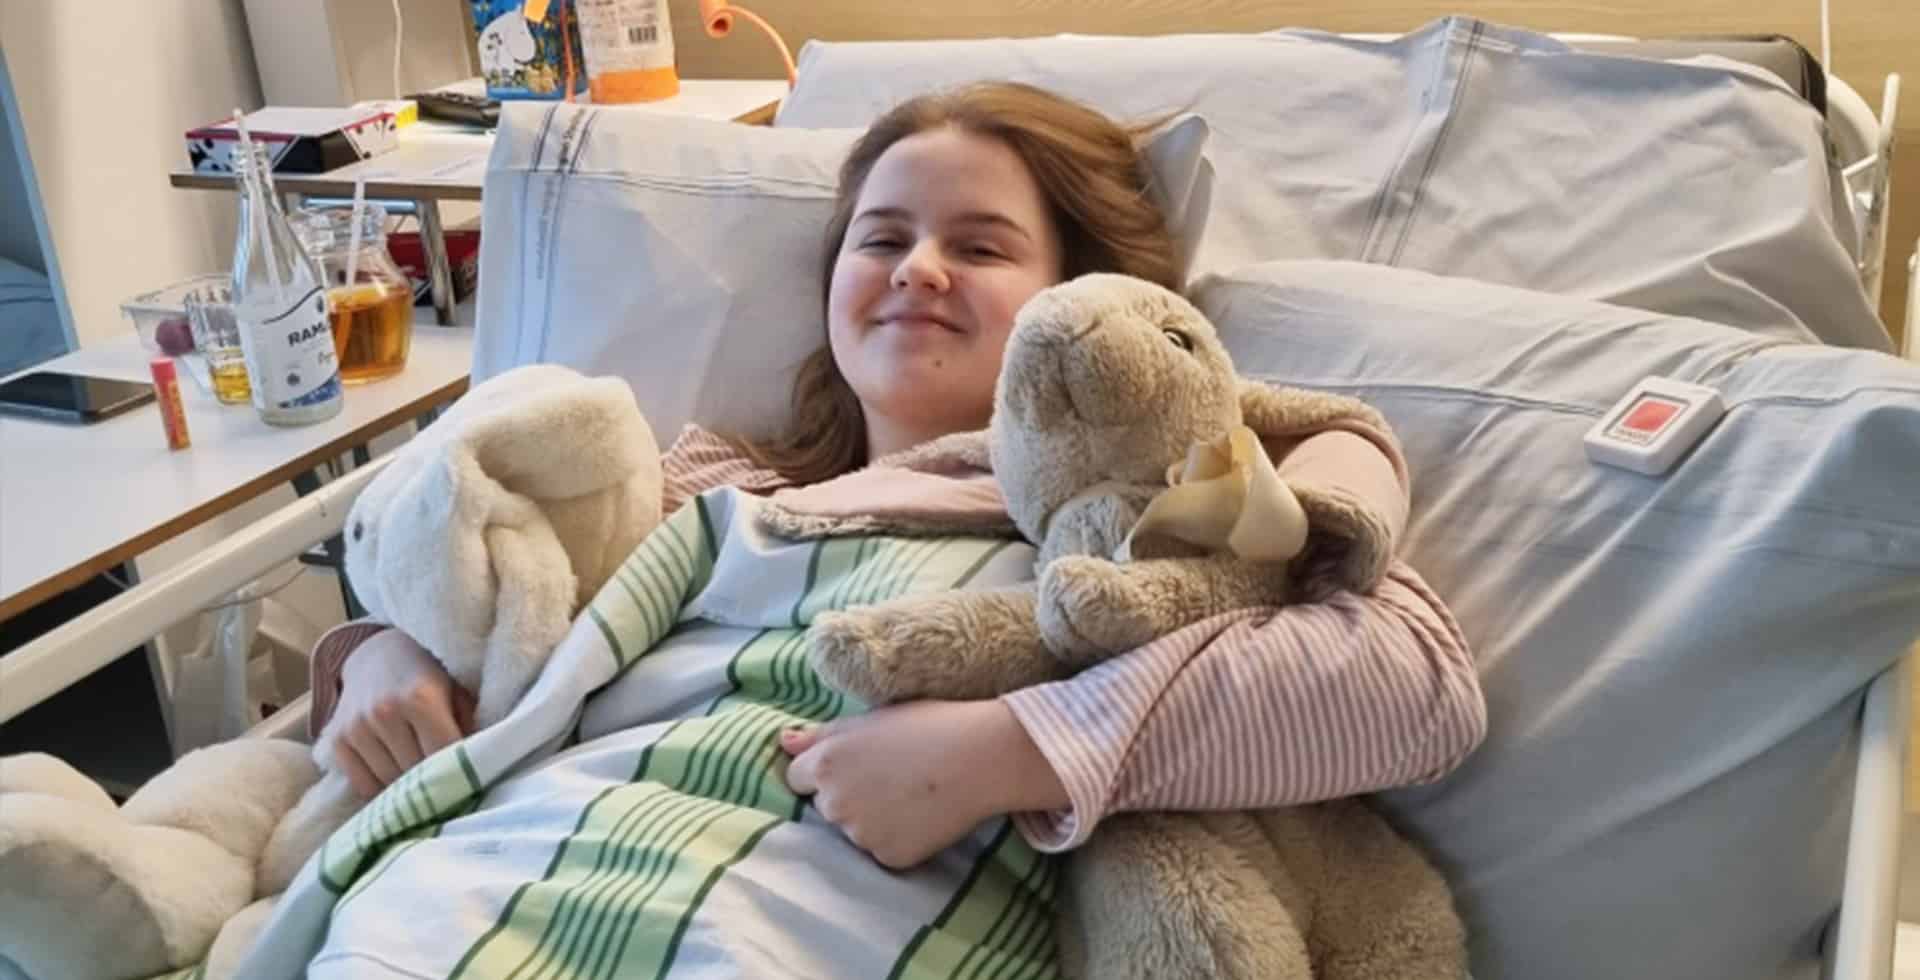 Emilia i en sjukhussäng tillsammans med två gosedjur efter sitt första epilepsianfall.